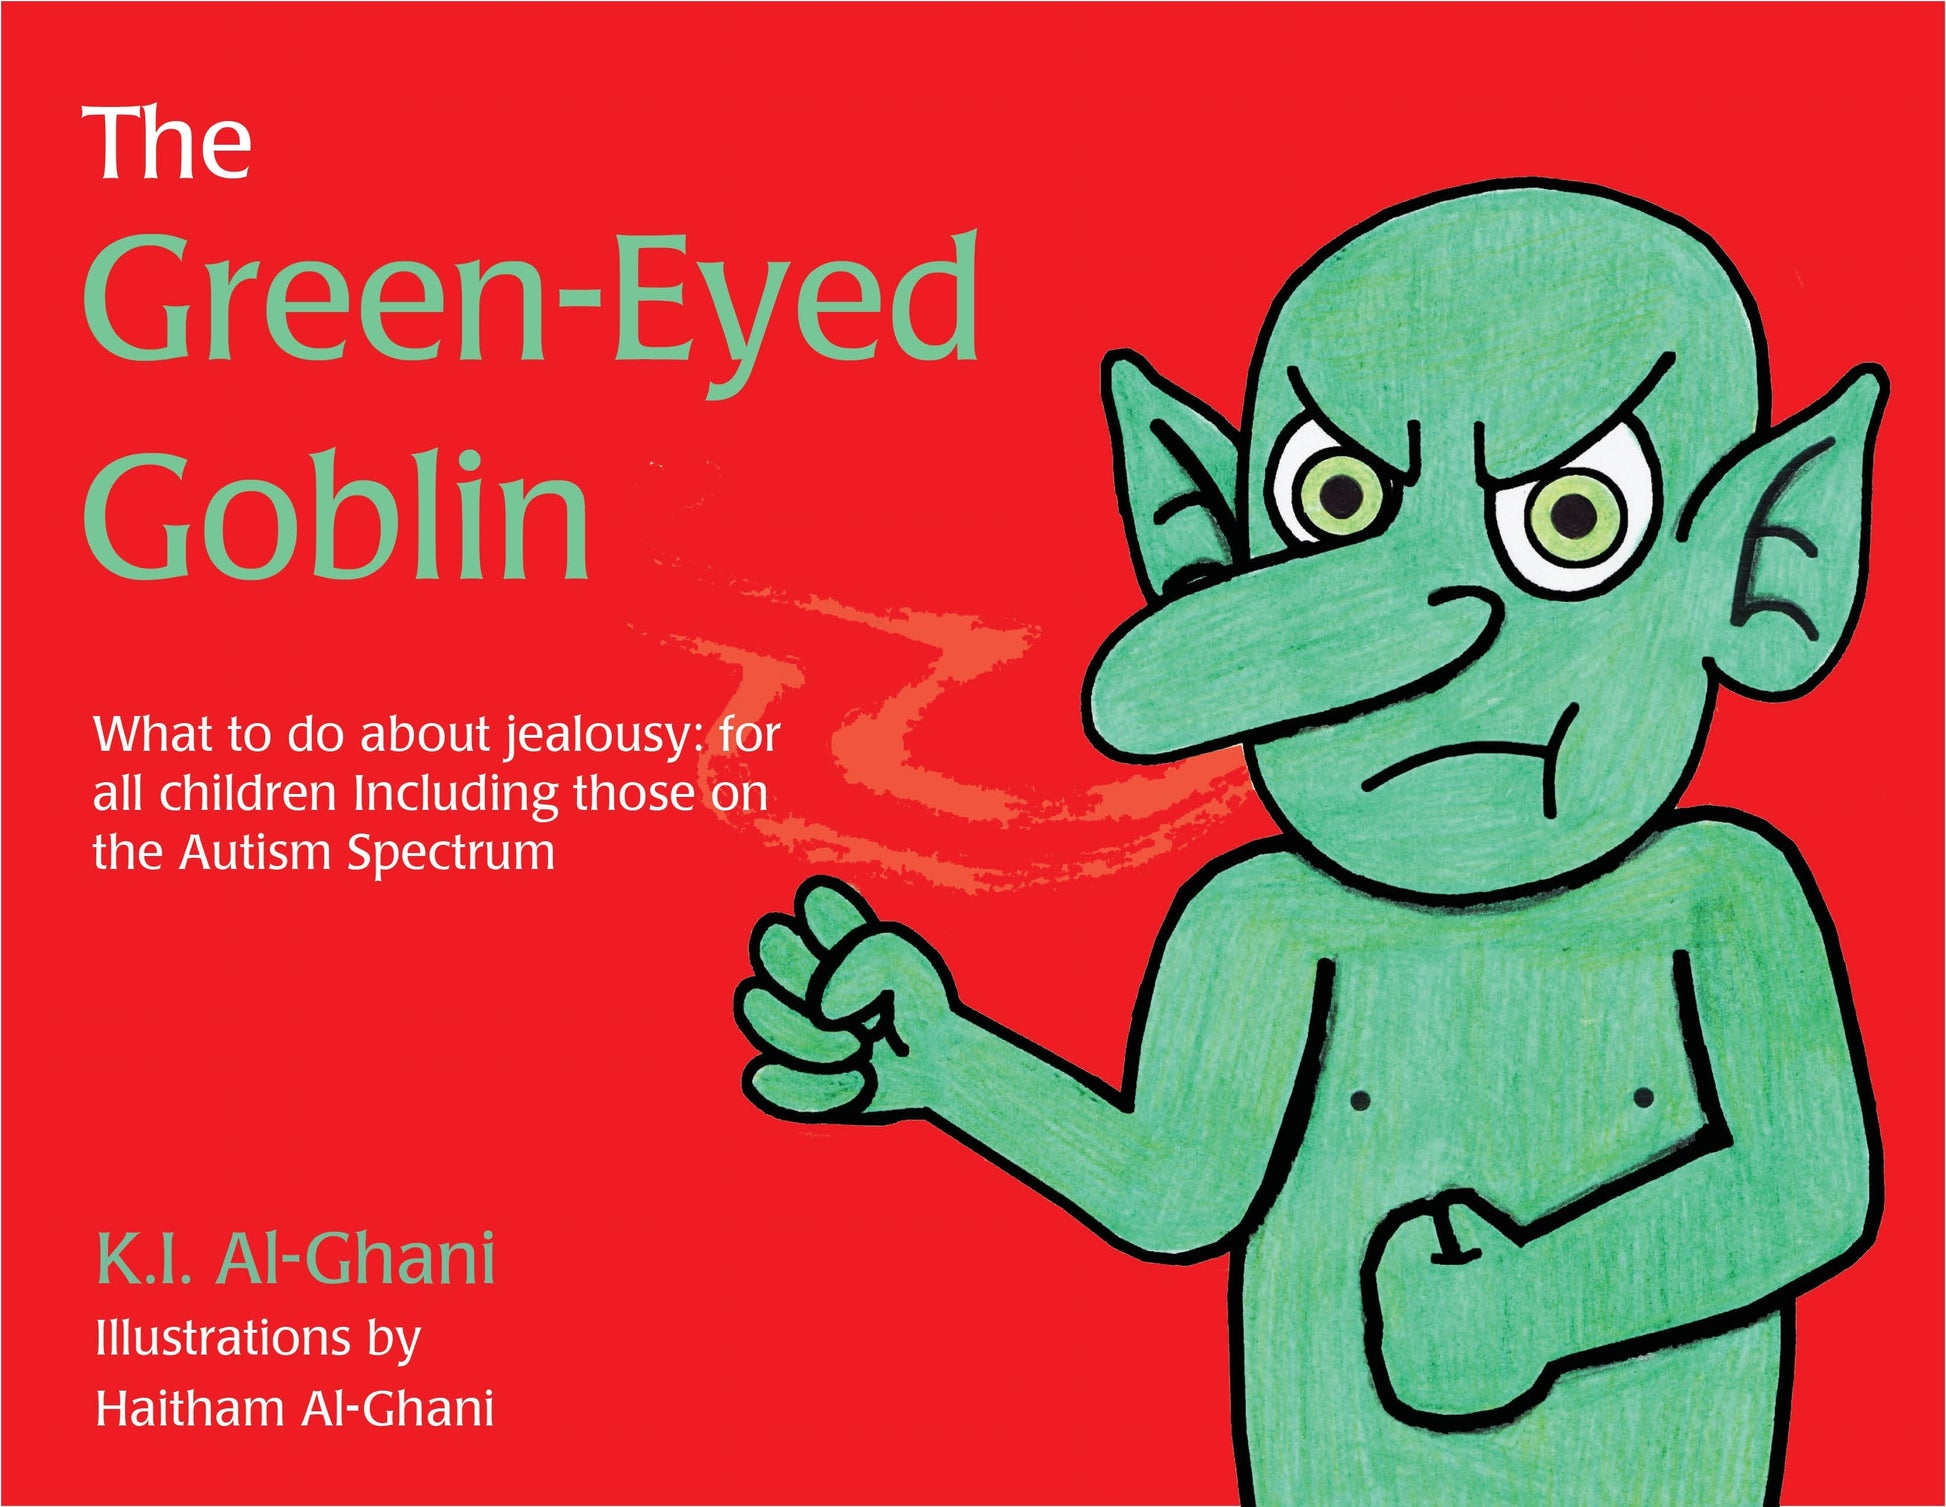 The Green-Eyed Goblin by Haitham Al-Ghani, Kay Al-Ghani